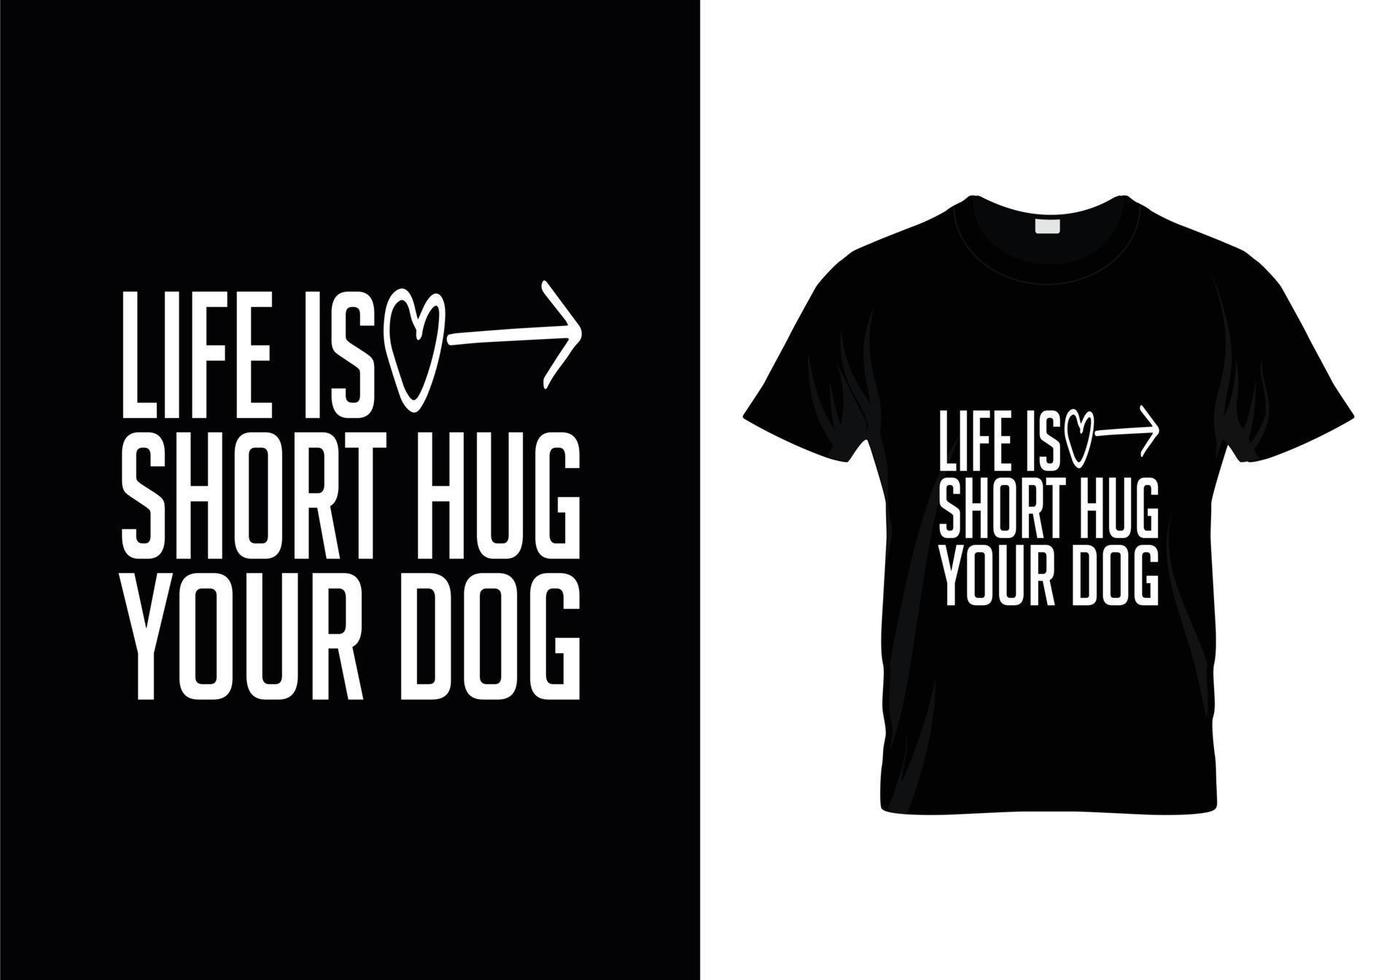 conception de t-shirt pour chien. conception de patte pour les amoureux des chiens. dire - mon chien pense que je suis génial. vecteur